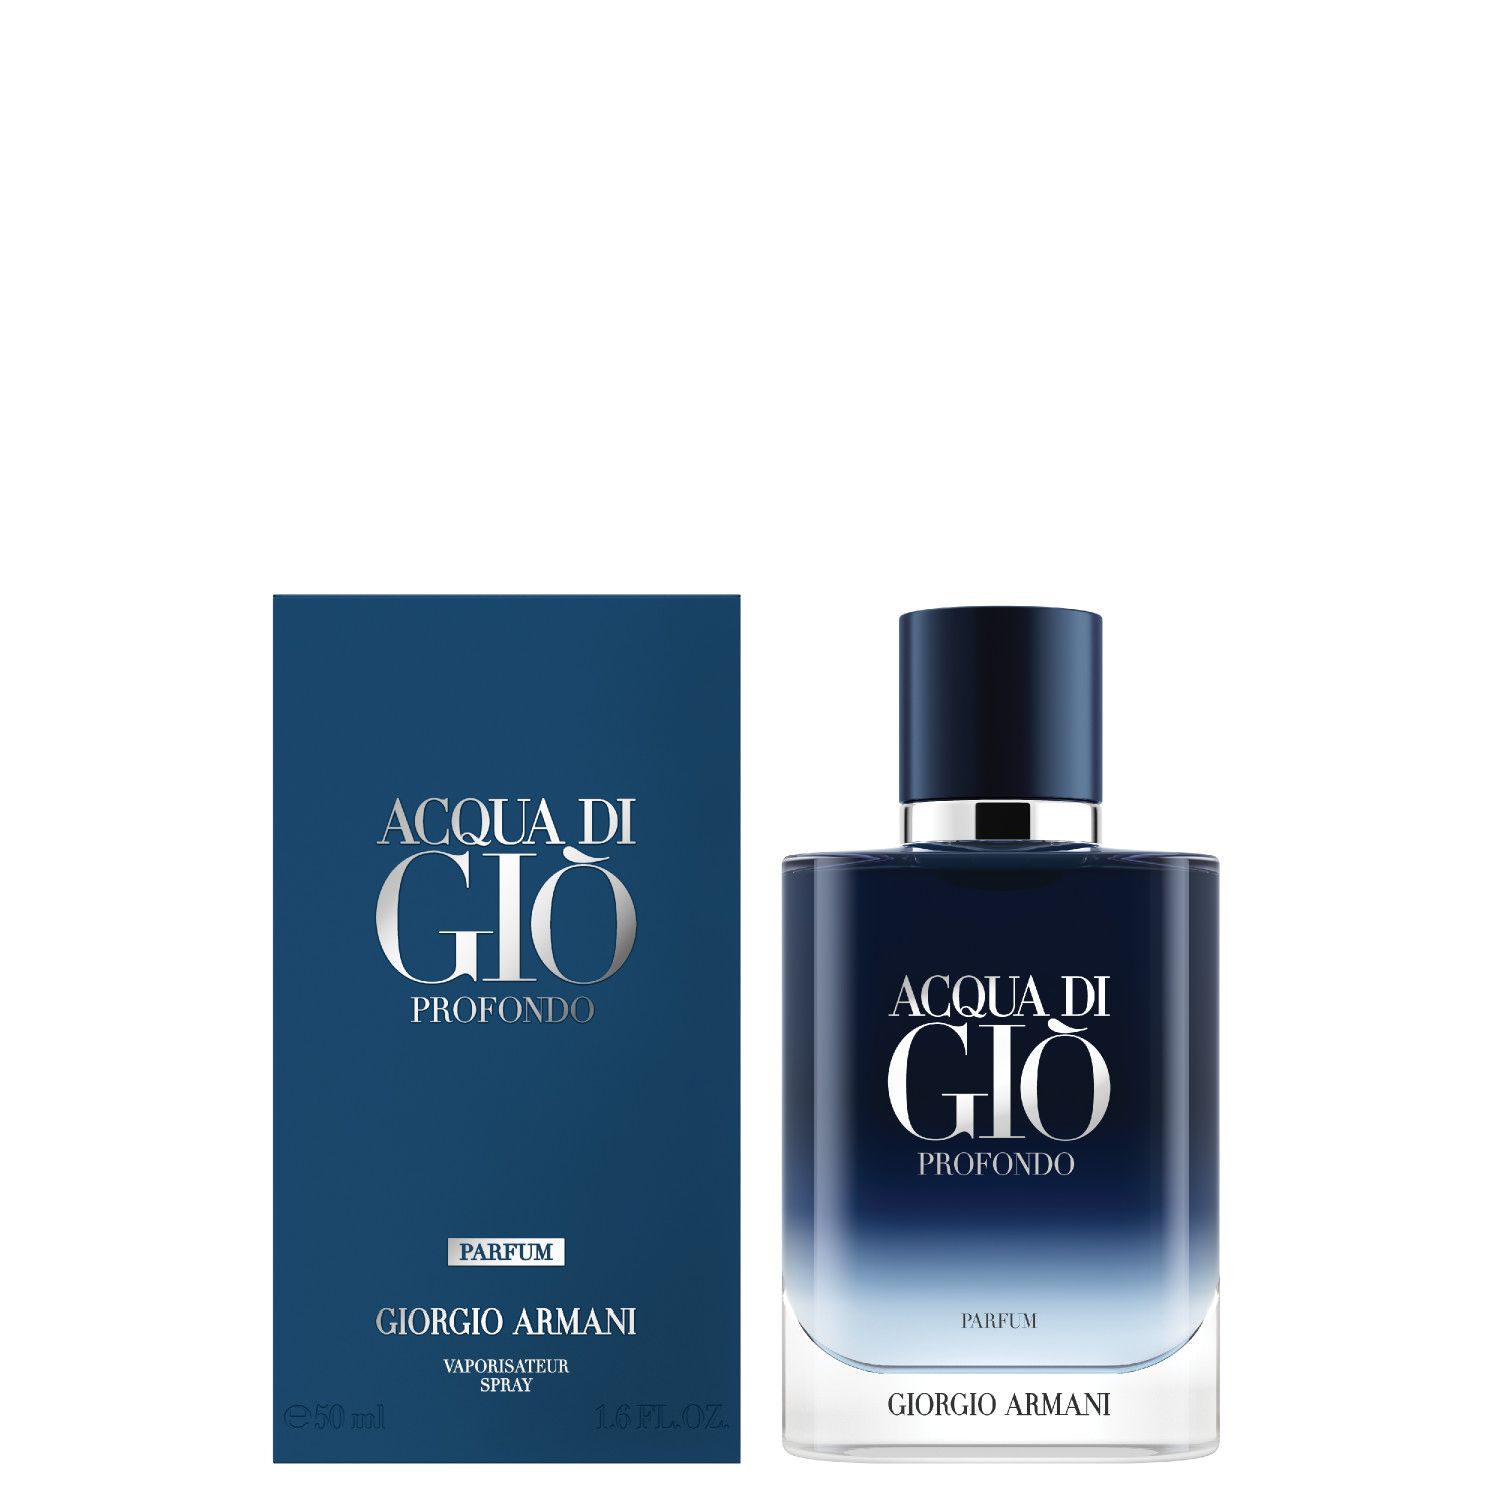 Giorgio Armani Acqua di Giò pour Homme Profondo Parfum 200 ml